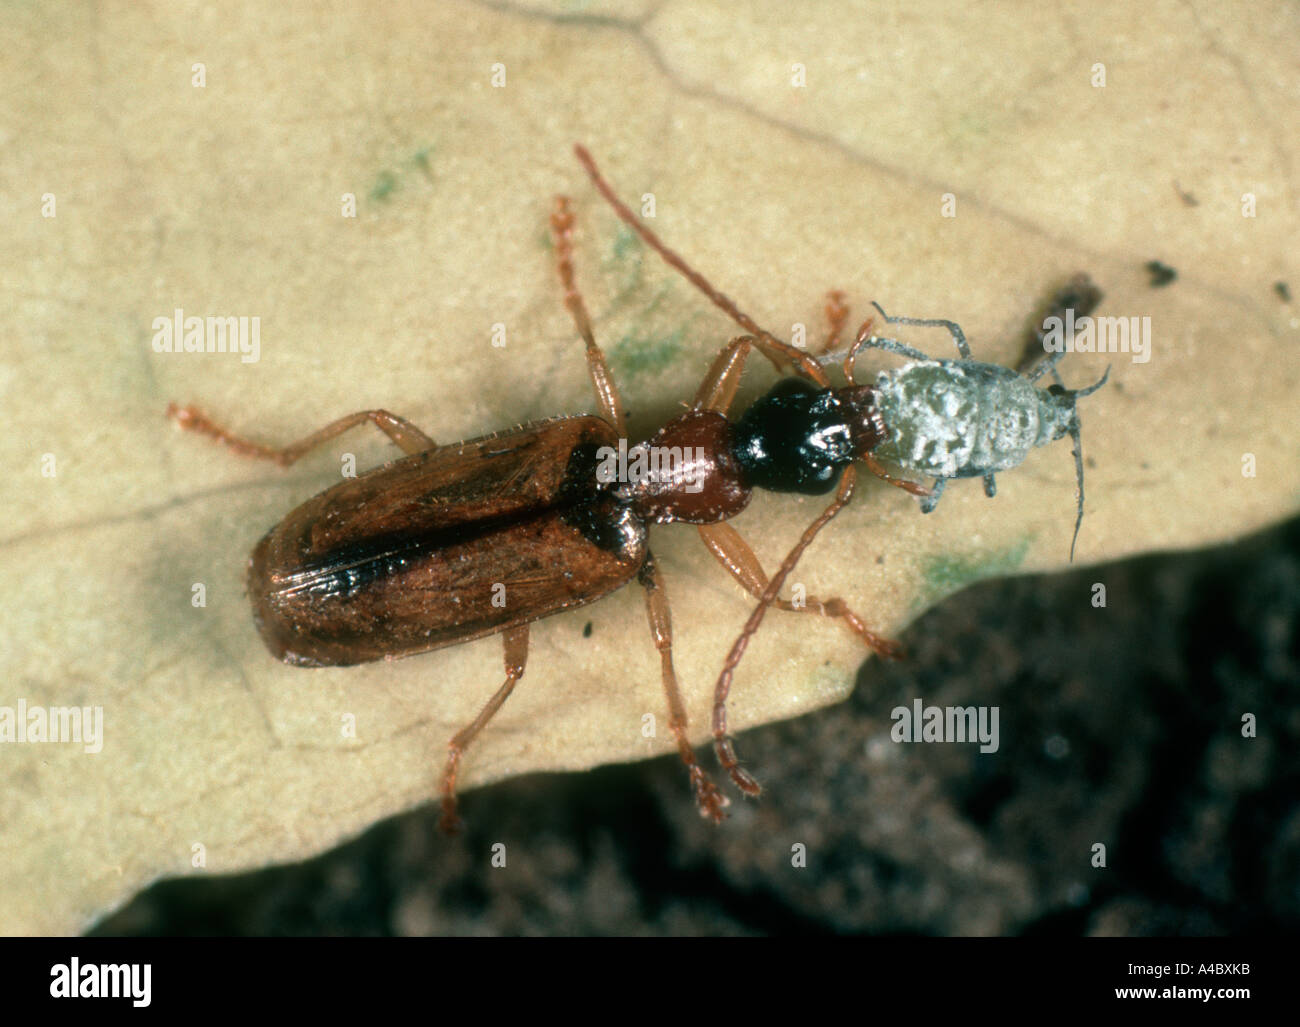 Predatory ground beetle Demetrias atricapillus with aphid prey Stock Photo